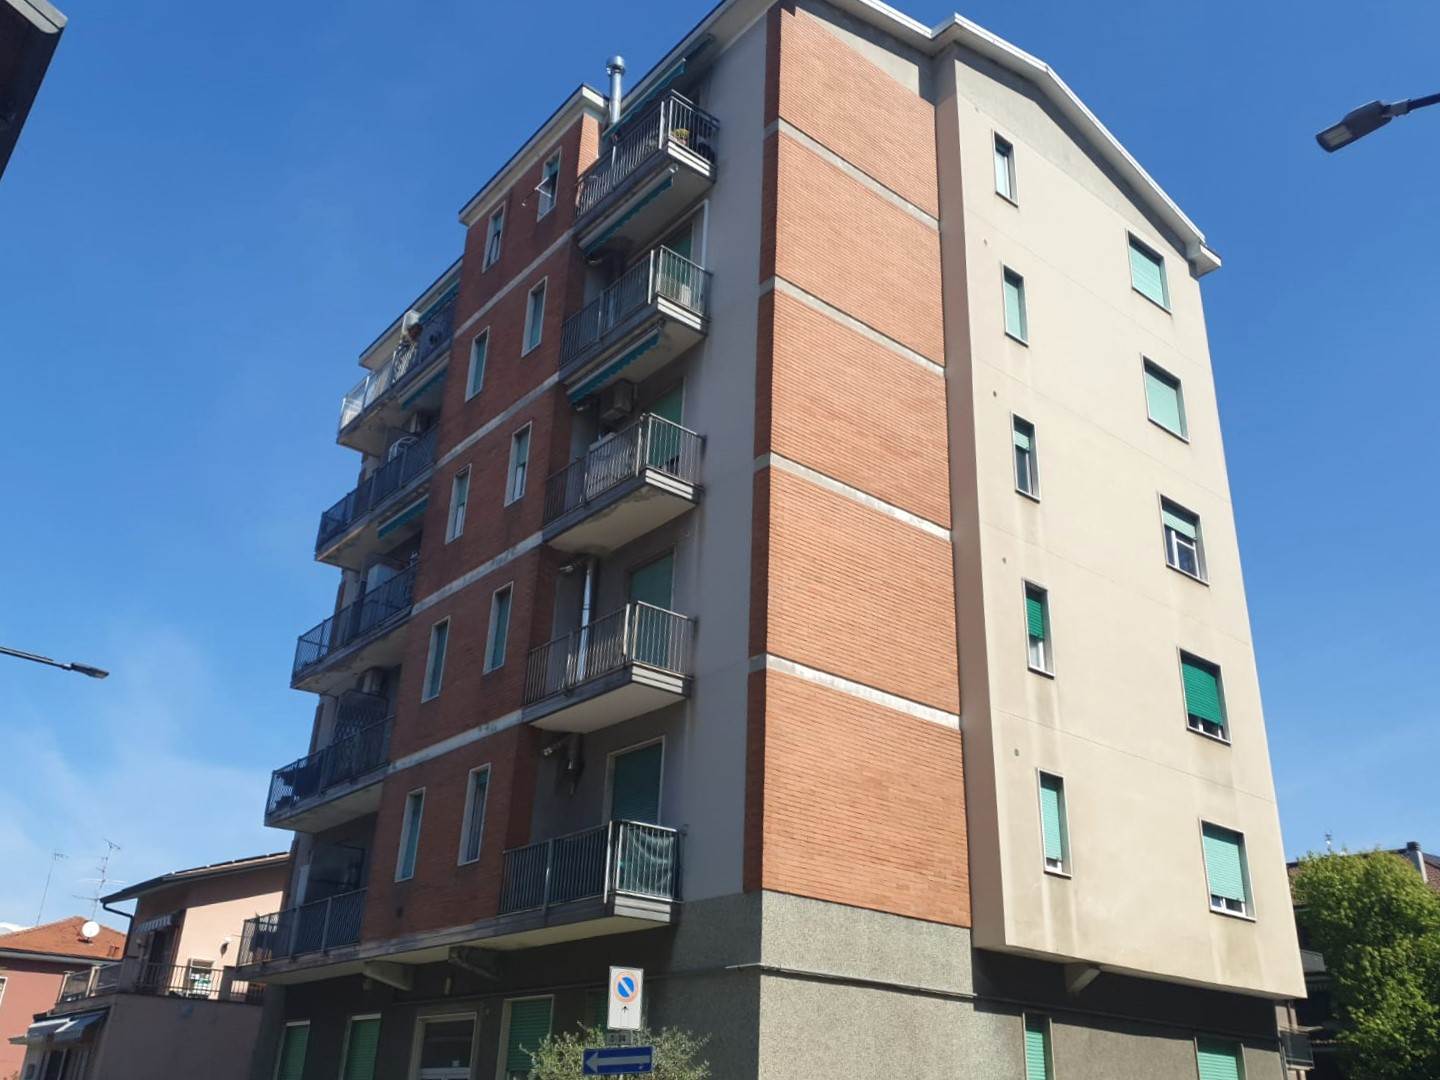 Rif 2/5912L'Abbruzzi Gruppo Immobiliare propone in Cinisello Balsamo, zona centrale, via Tasso, luminoso appartamento di 2 locali di mq.70 sito al 